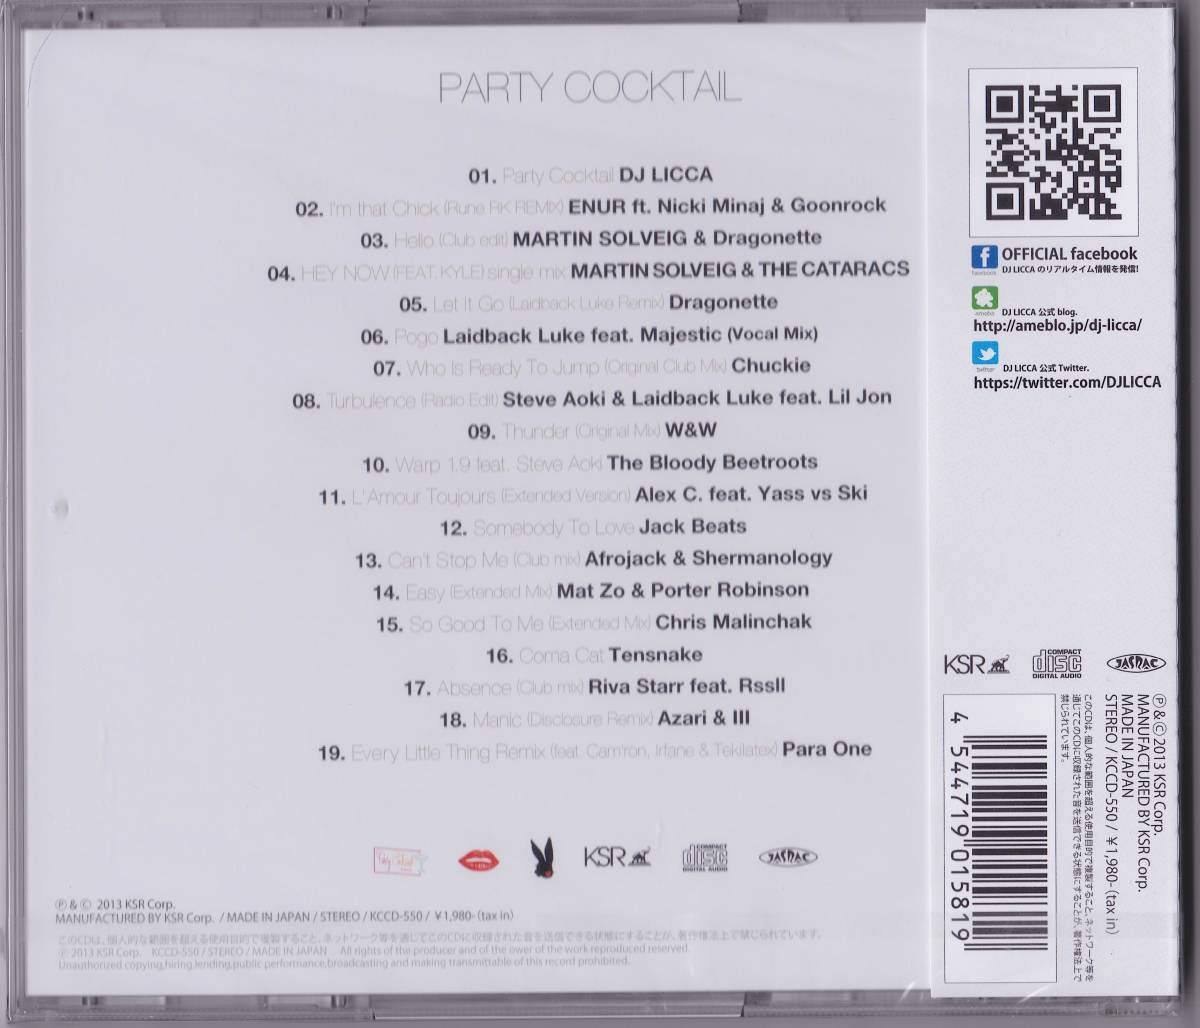 *** DJ LICCA [PARTY COCKTAIL]2013 год запись 19 искривление сбор CD альбом KCCD-550 TSUTAYA ограничение нераспечатанный товар!! ***